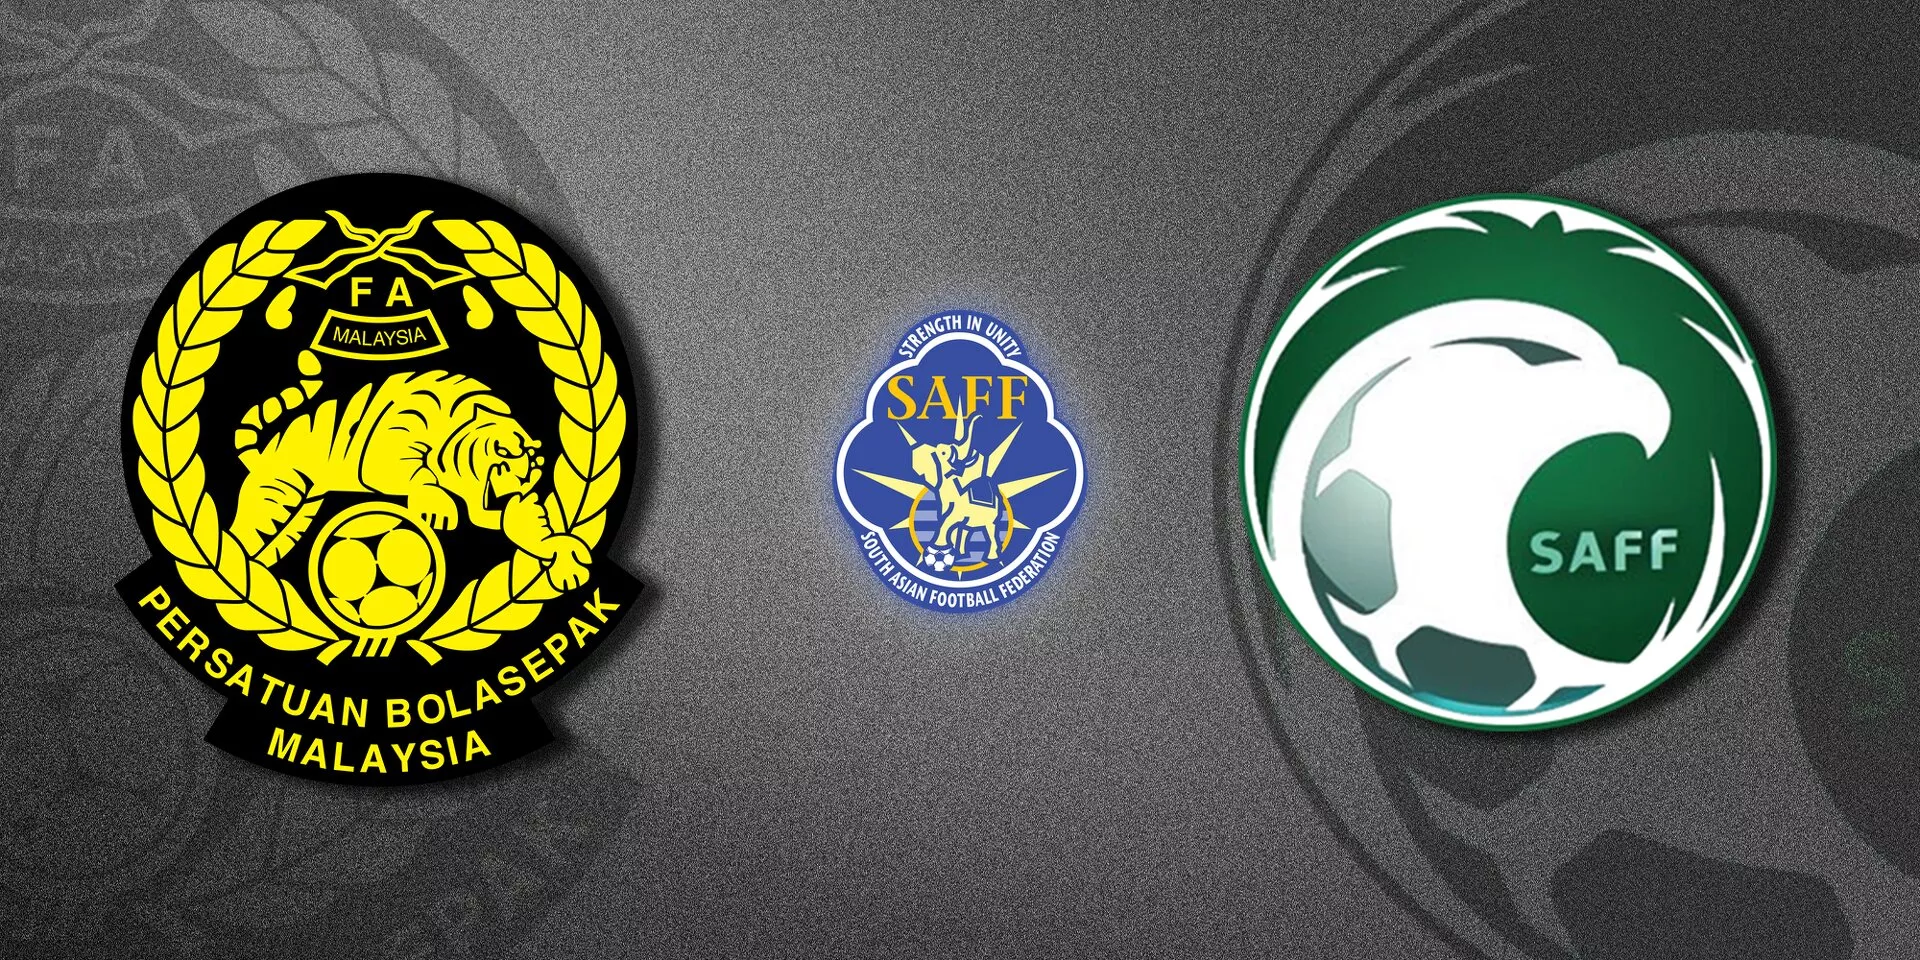 Malaysia and Saudi Arabia invited to participate in 2023 SAFF Championship